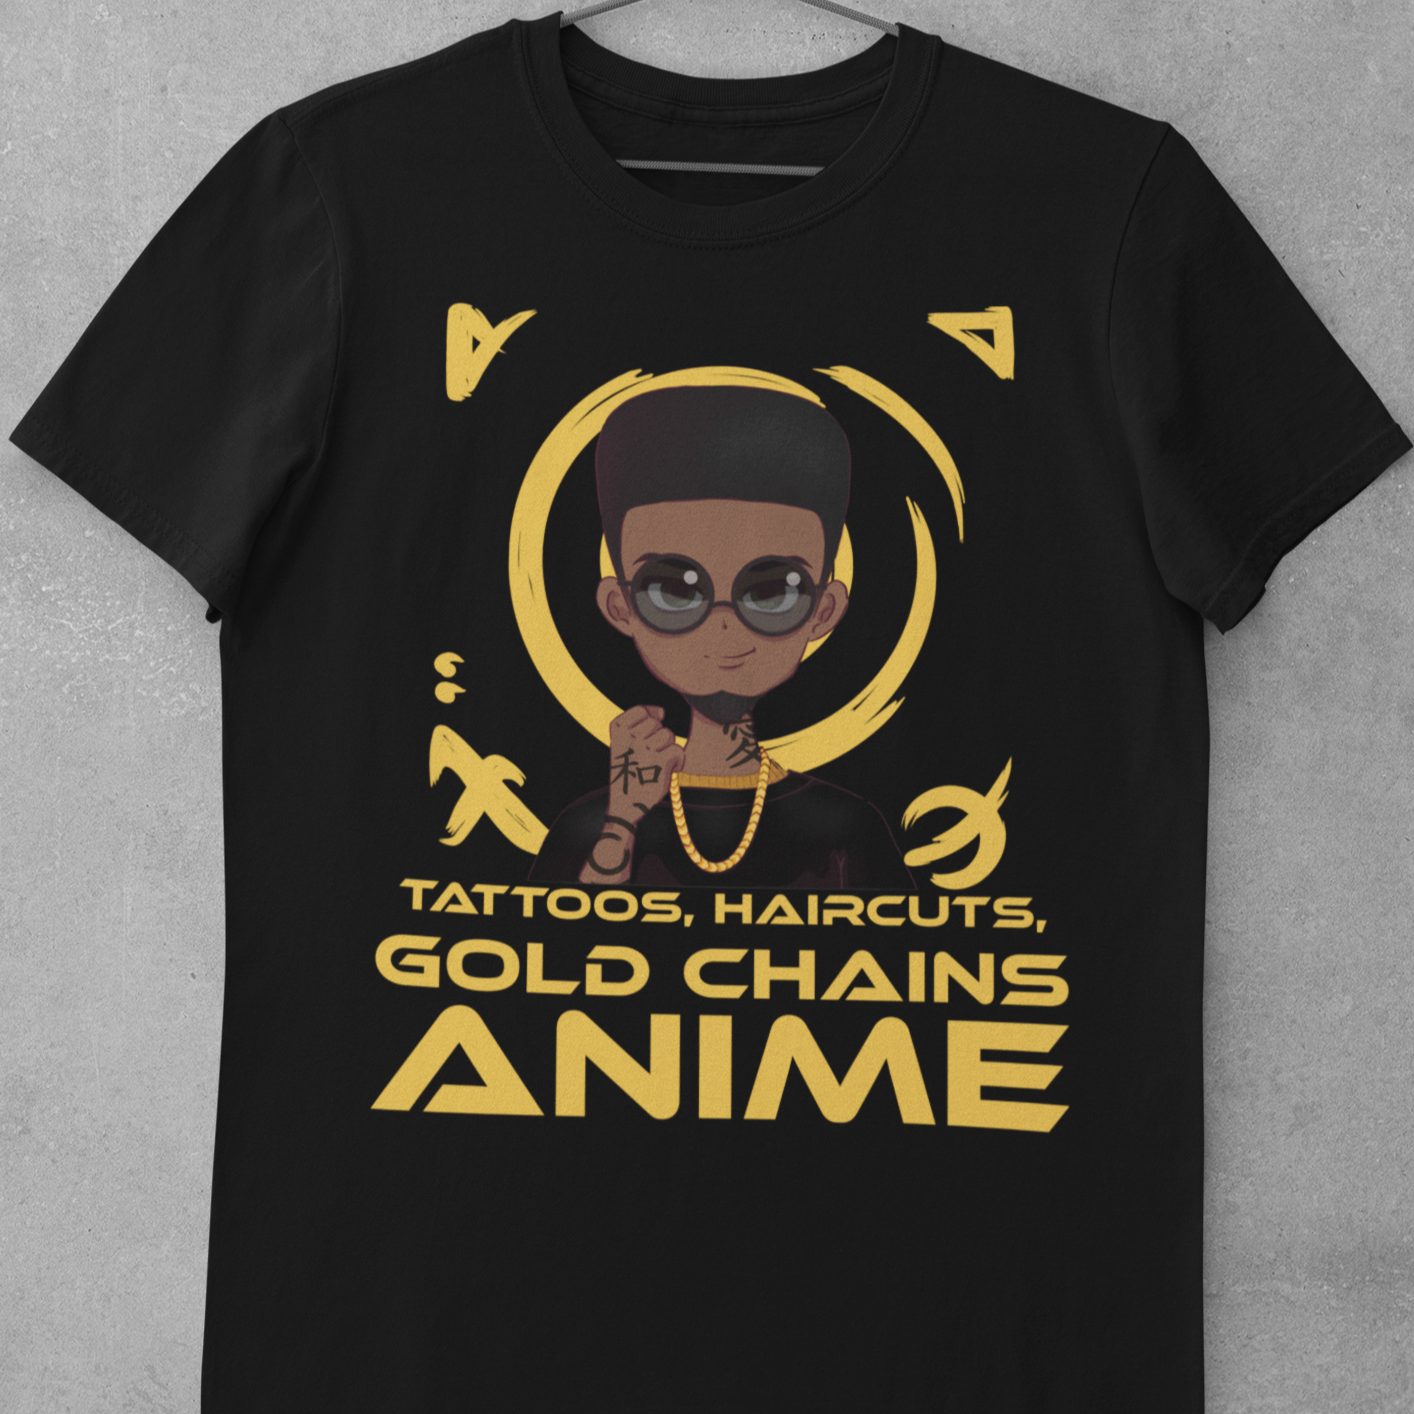 Tattoos, Haircut, Gold Chains, Anime Tshirt - Wilson Design Group